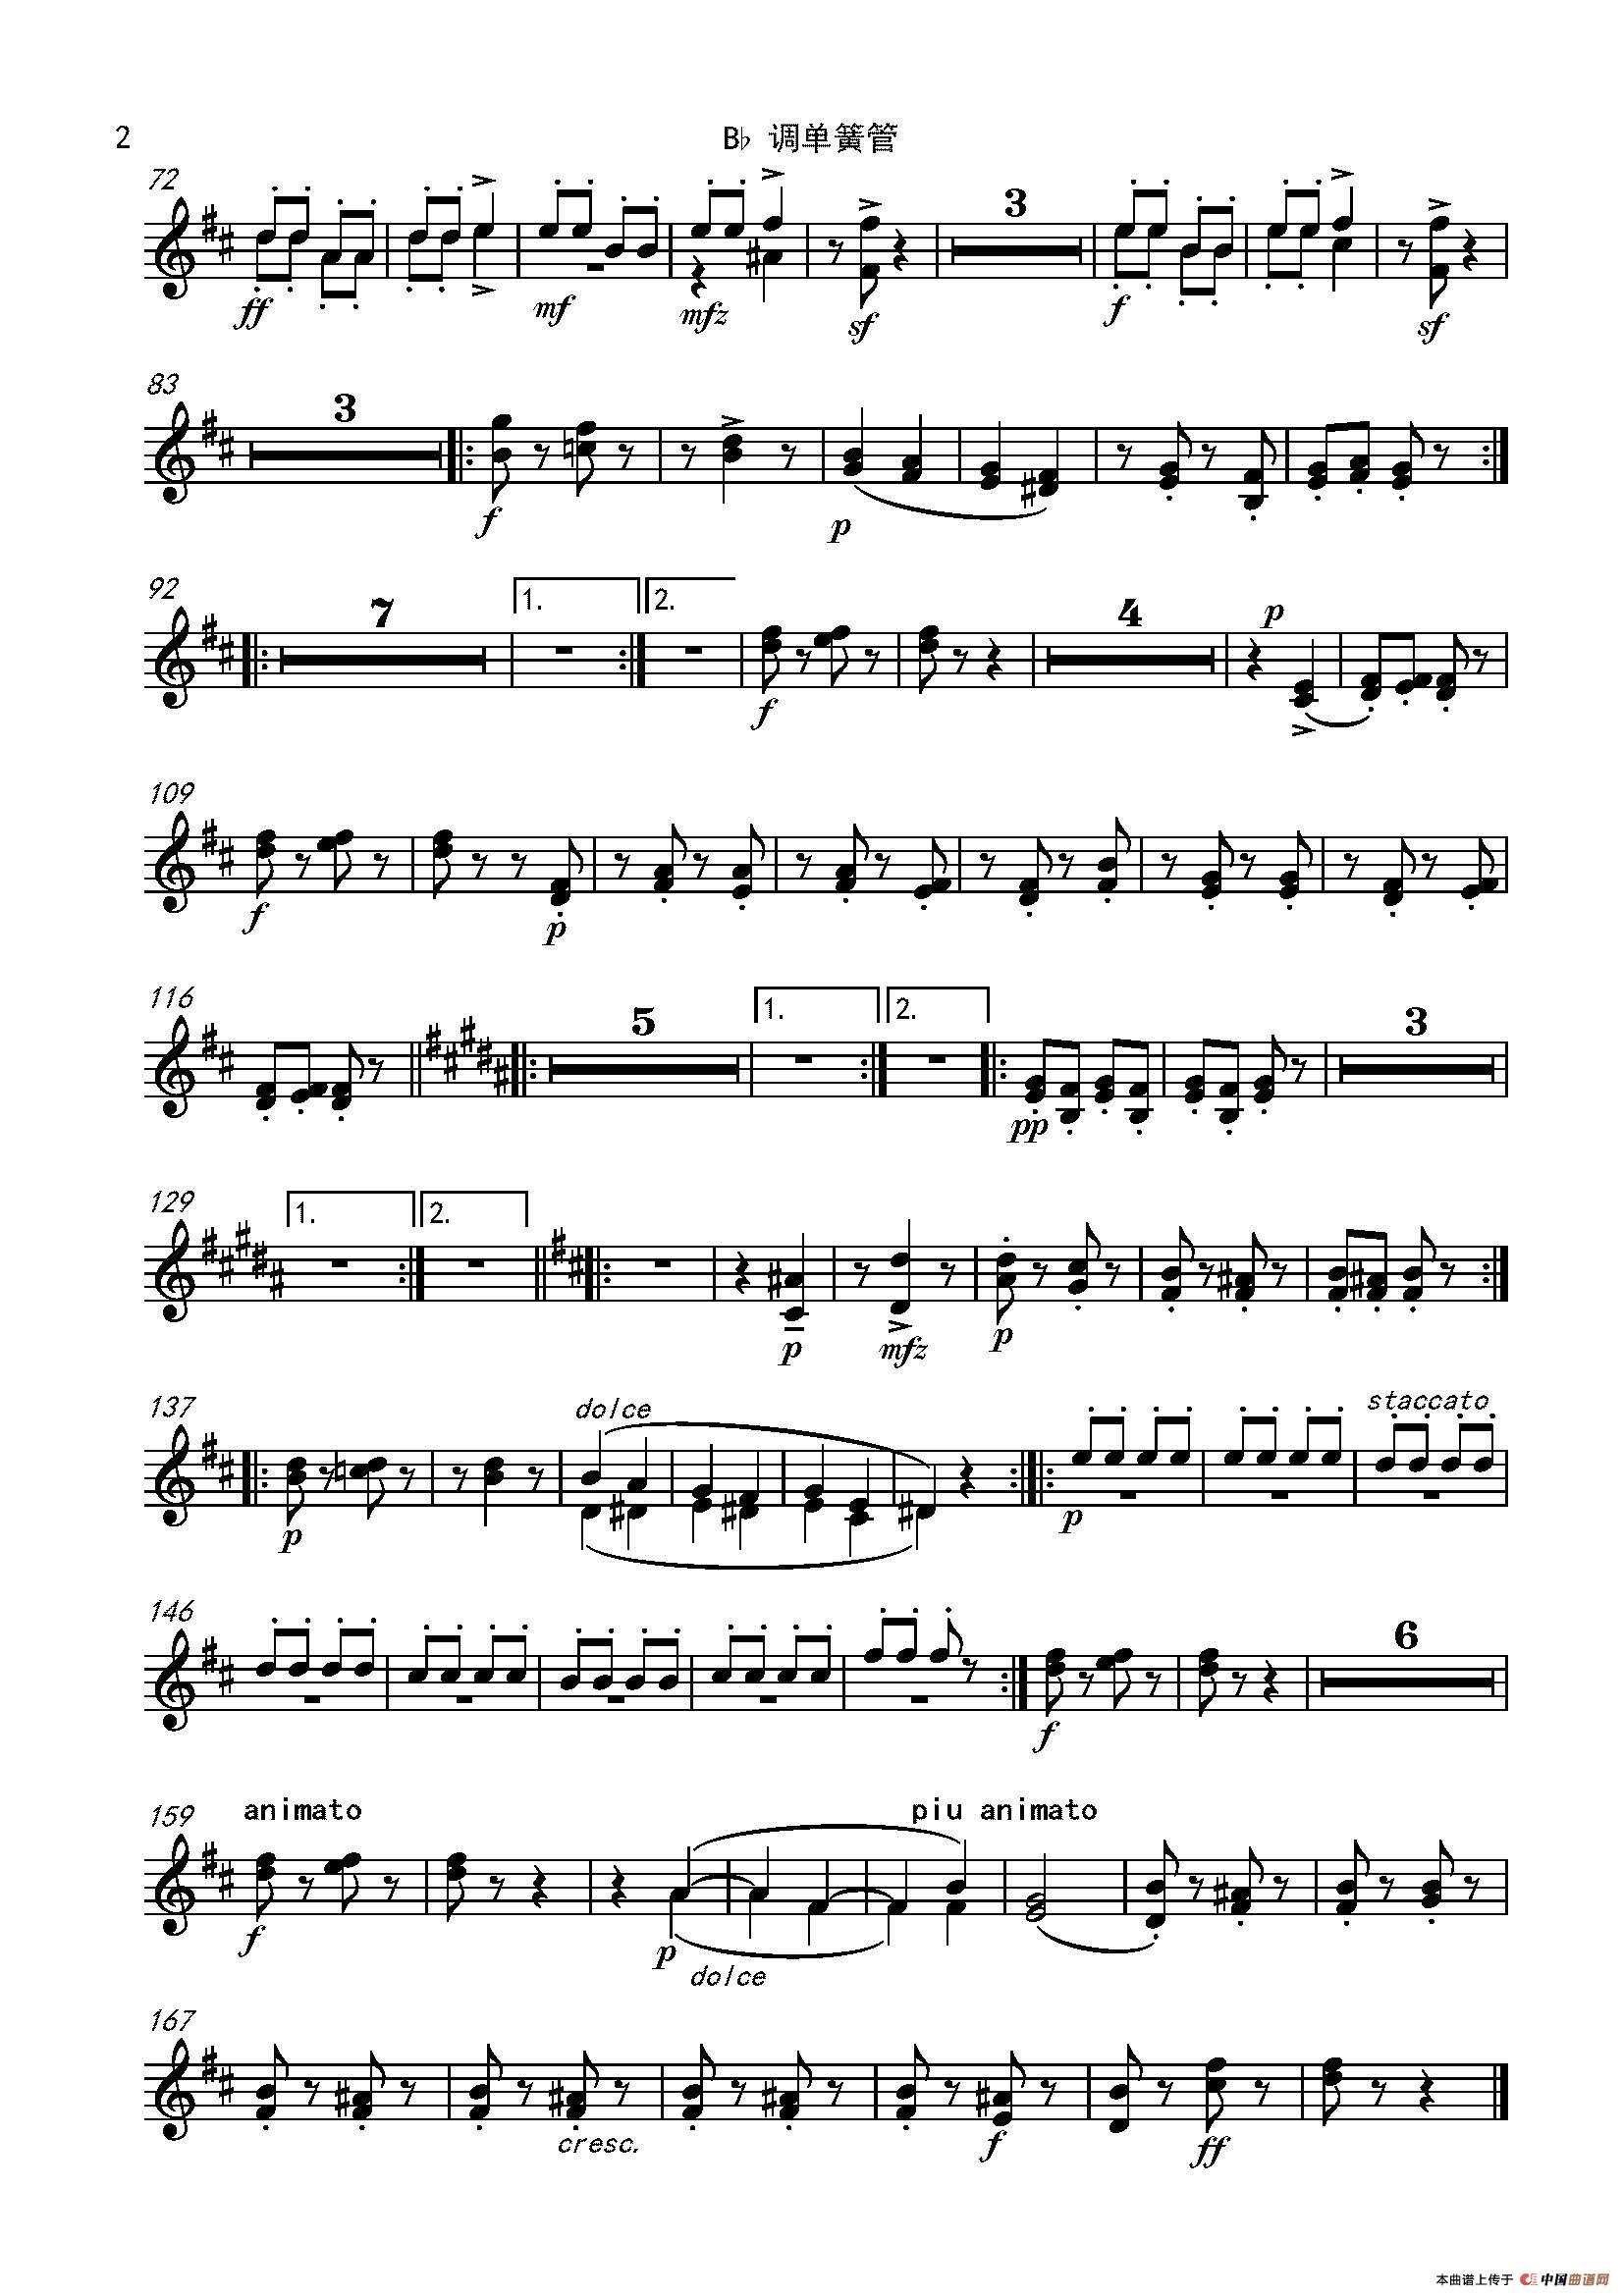 流浪者之歌(又名:吉普赛之歌)(管弦乐队总谱和分谱)(1)